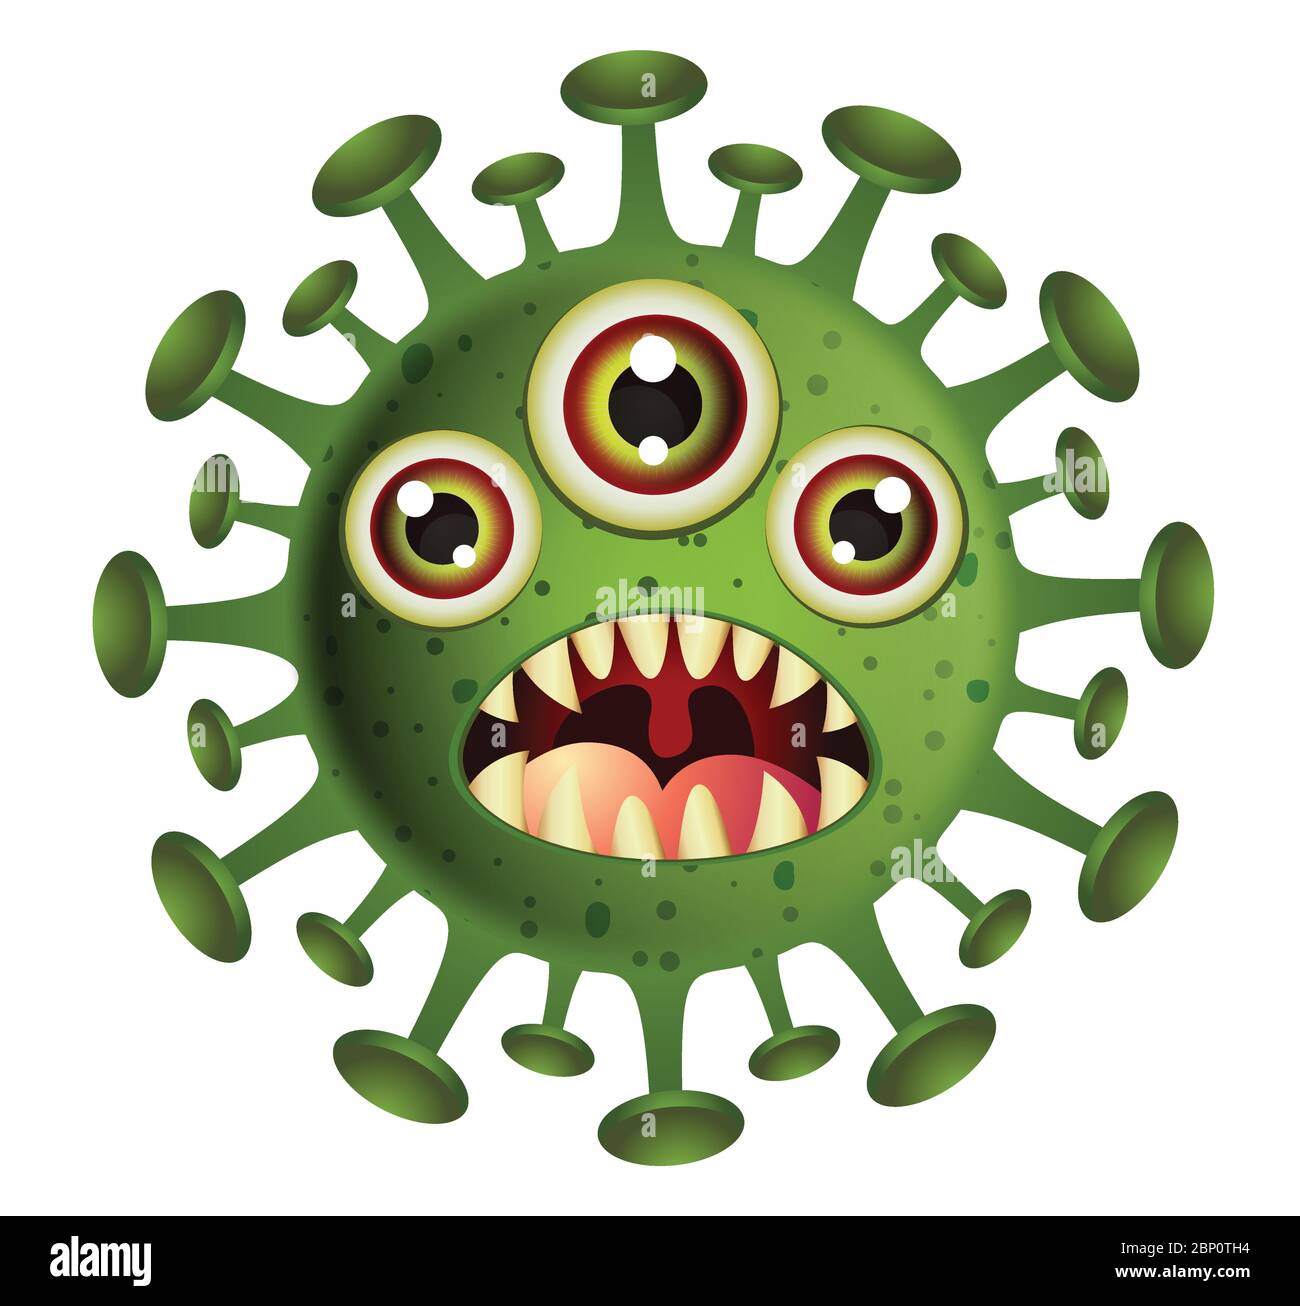 Corona Virus illustration.Green Virus cartoon on white background.Virus vector illustration. Stock Vector